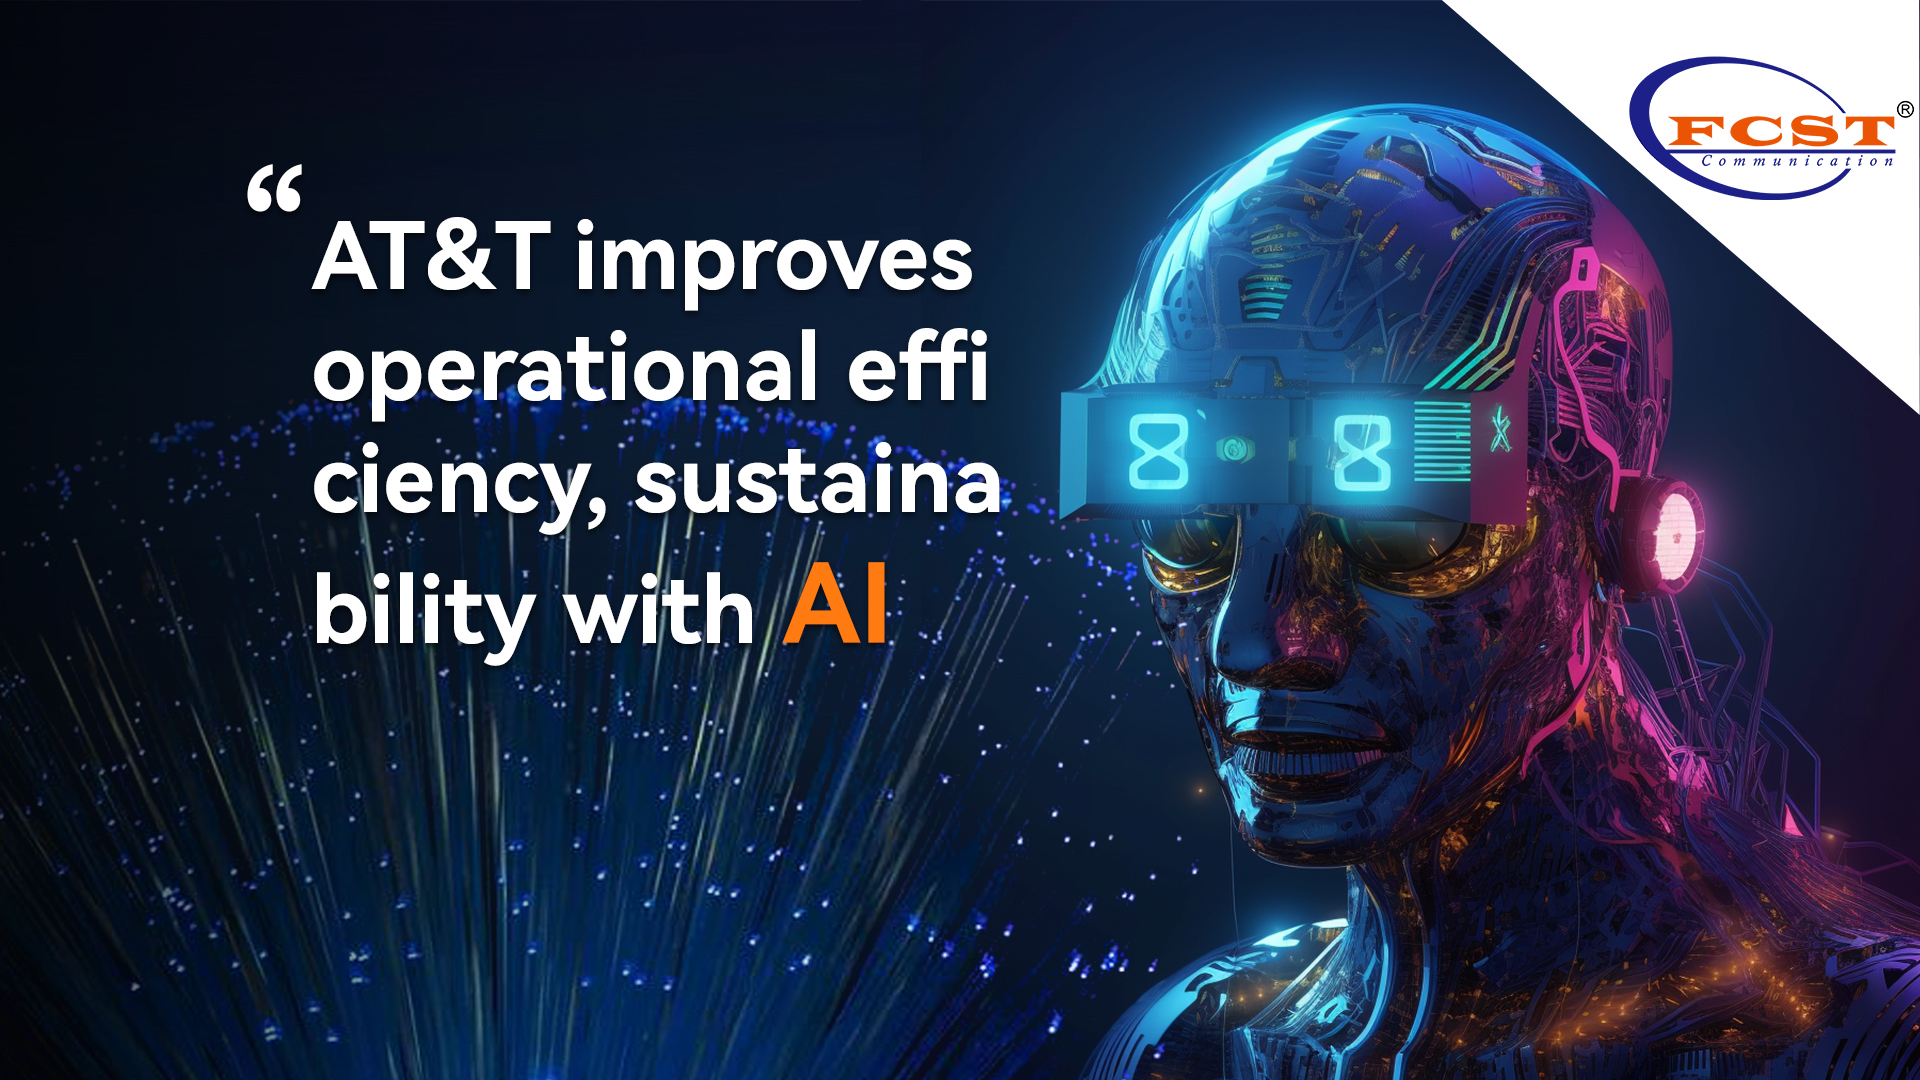 A AT&T melhora a eficiência operacional, sustentabilidade com IA